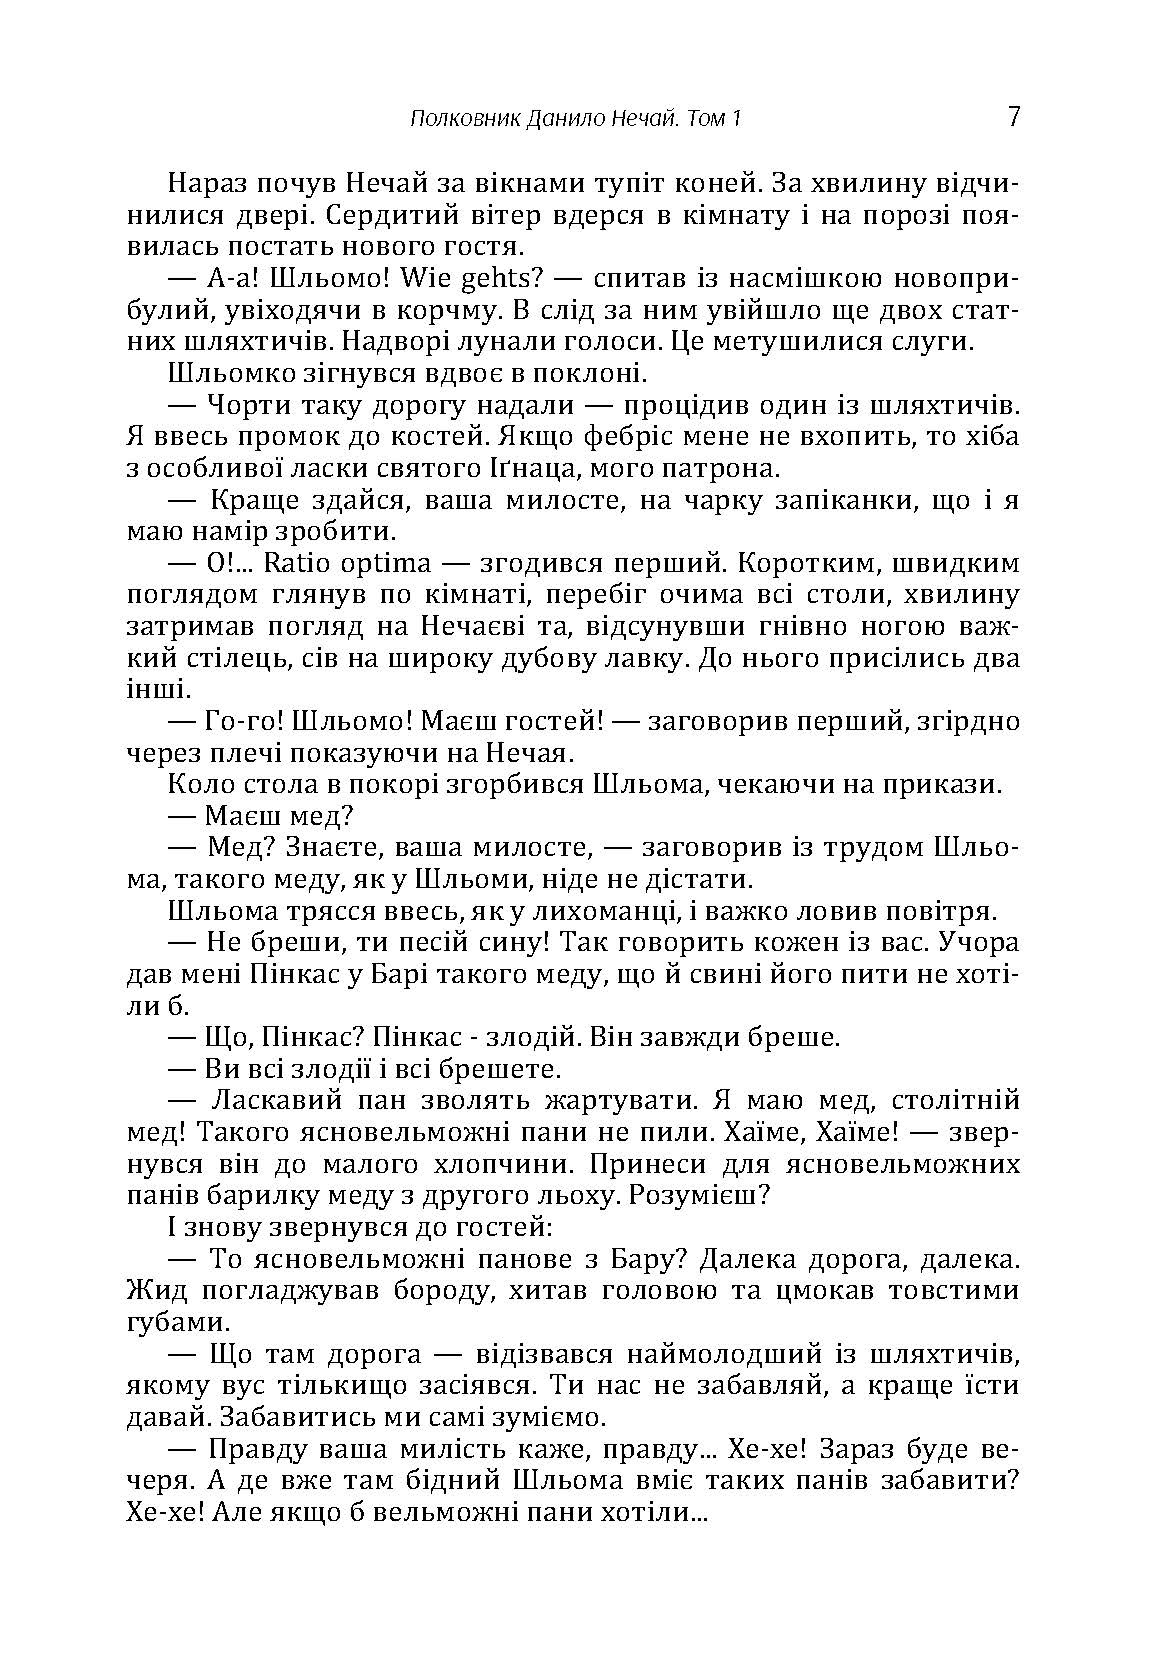 Полковник Данило Нечай. 1 том.. Автор — Радзикевич Юліан. 